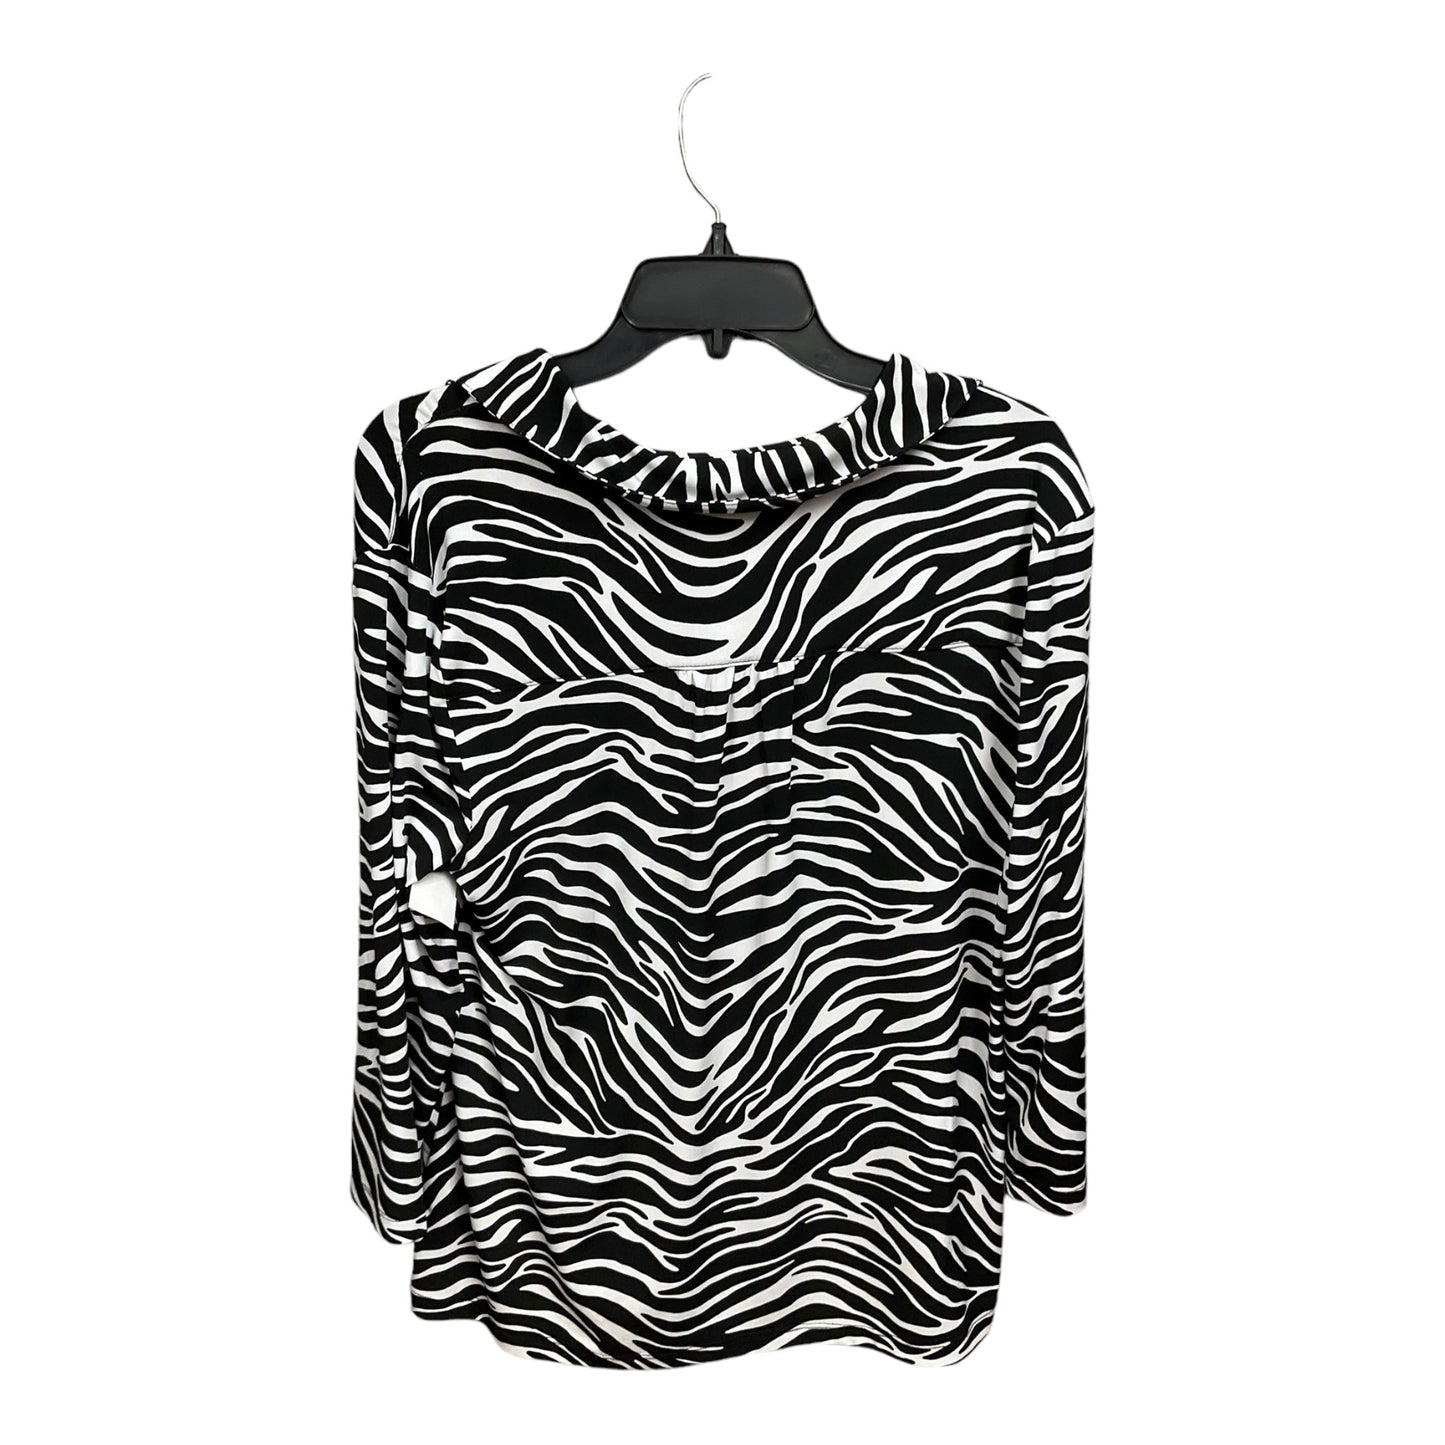 Zebra Print Top Long Sleeve Dana Buchman, Size L